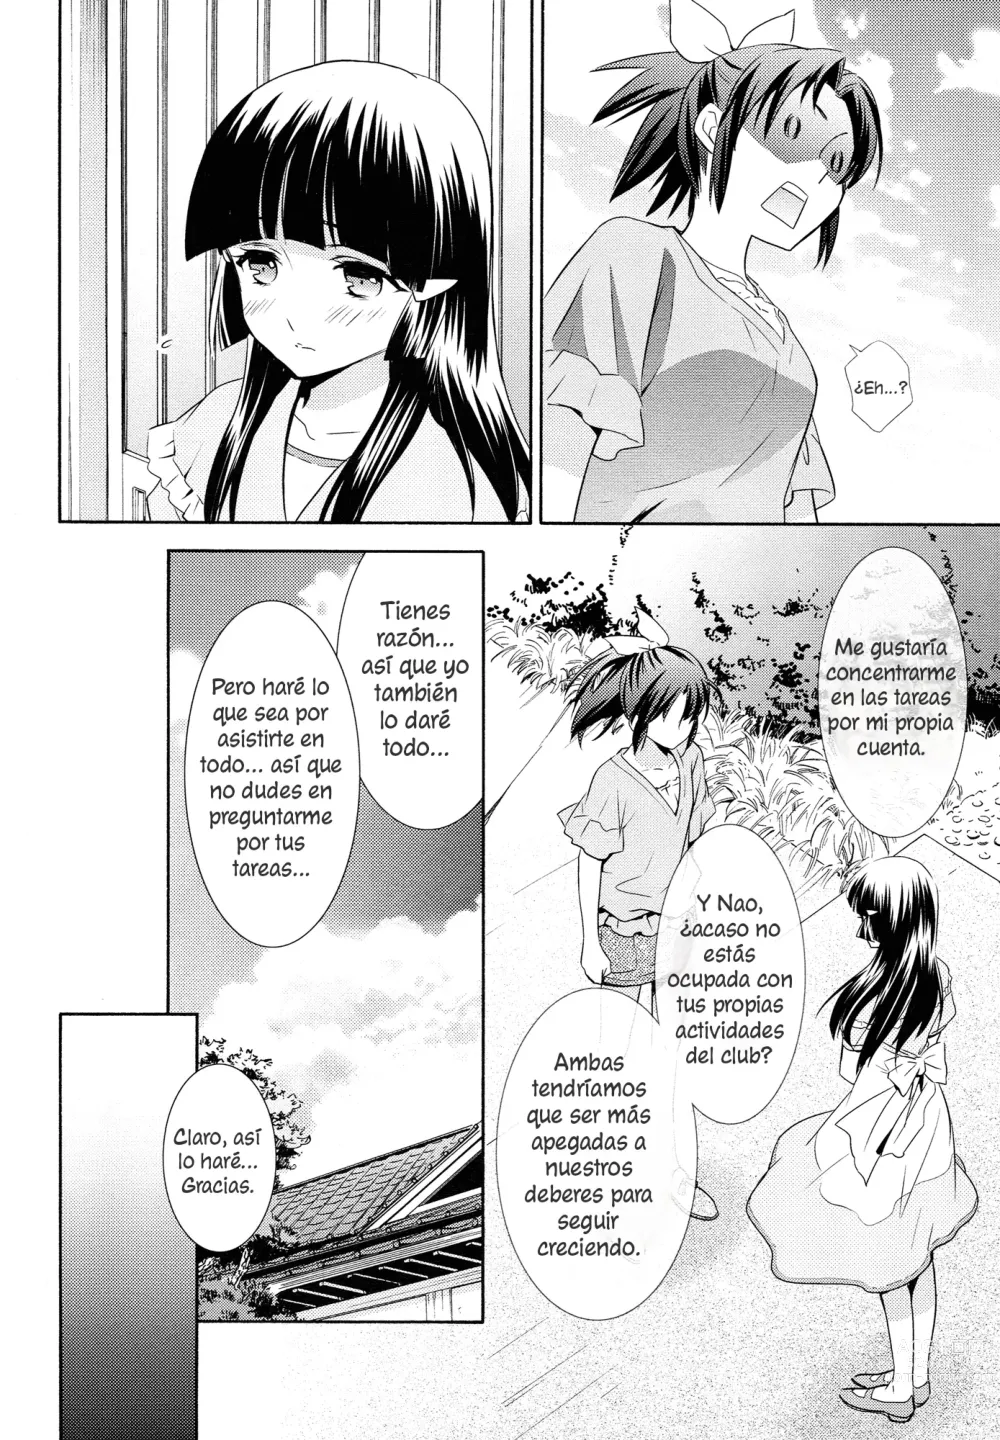 Page 9 of doujinshi Amagami Syrup